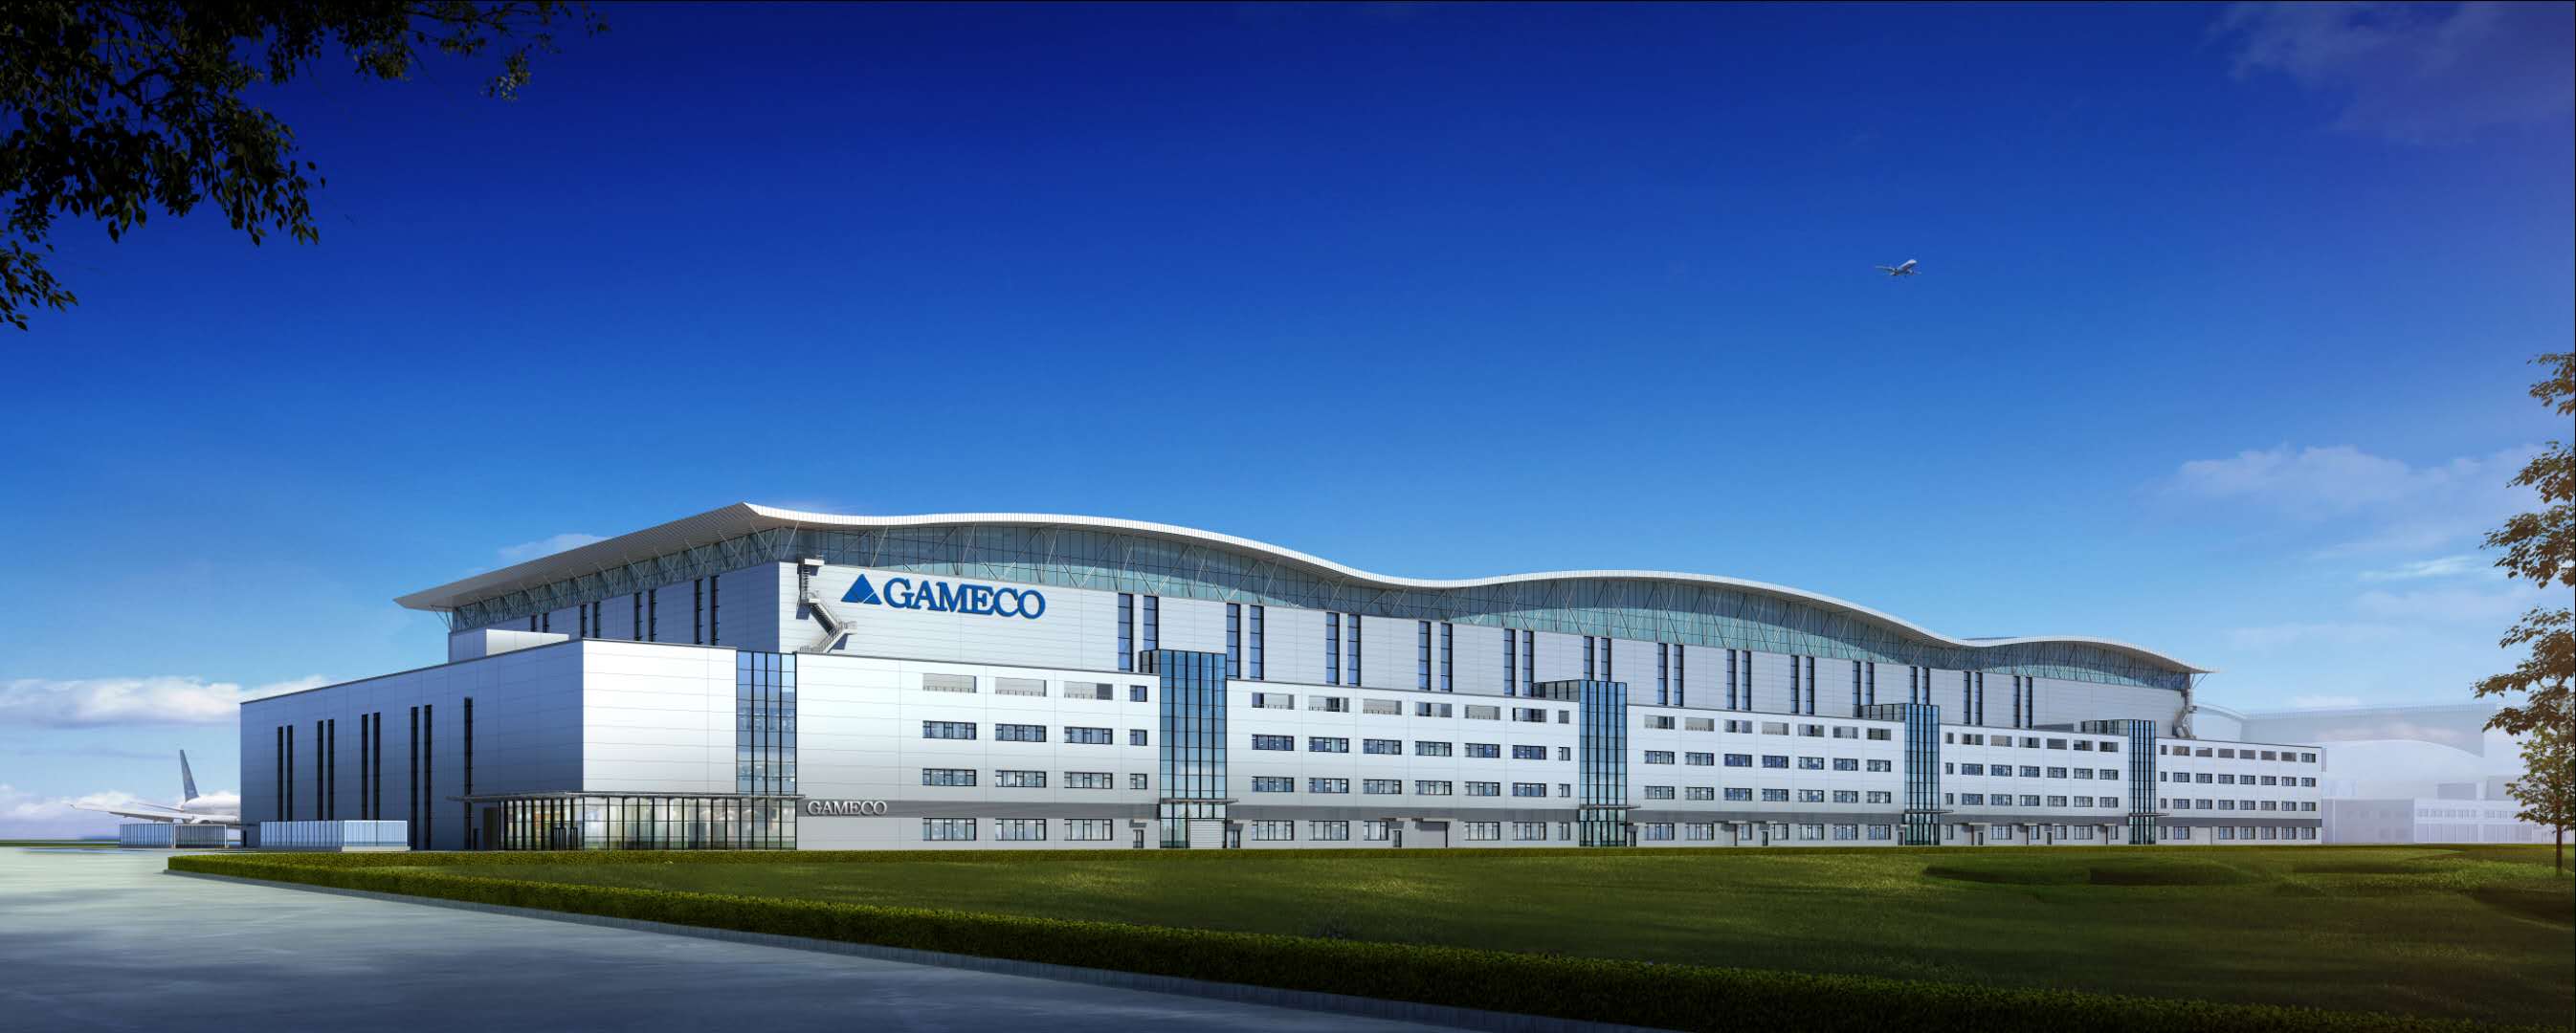 广州白云国际机场南航GAMECO飞机维修设施三期18号维修机库工程